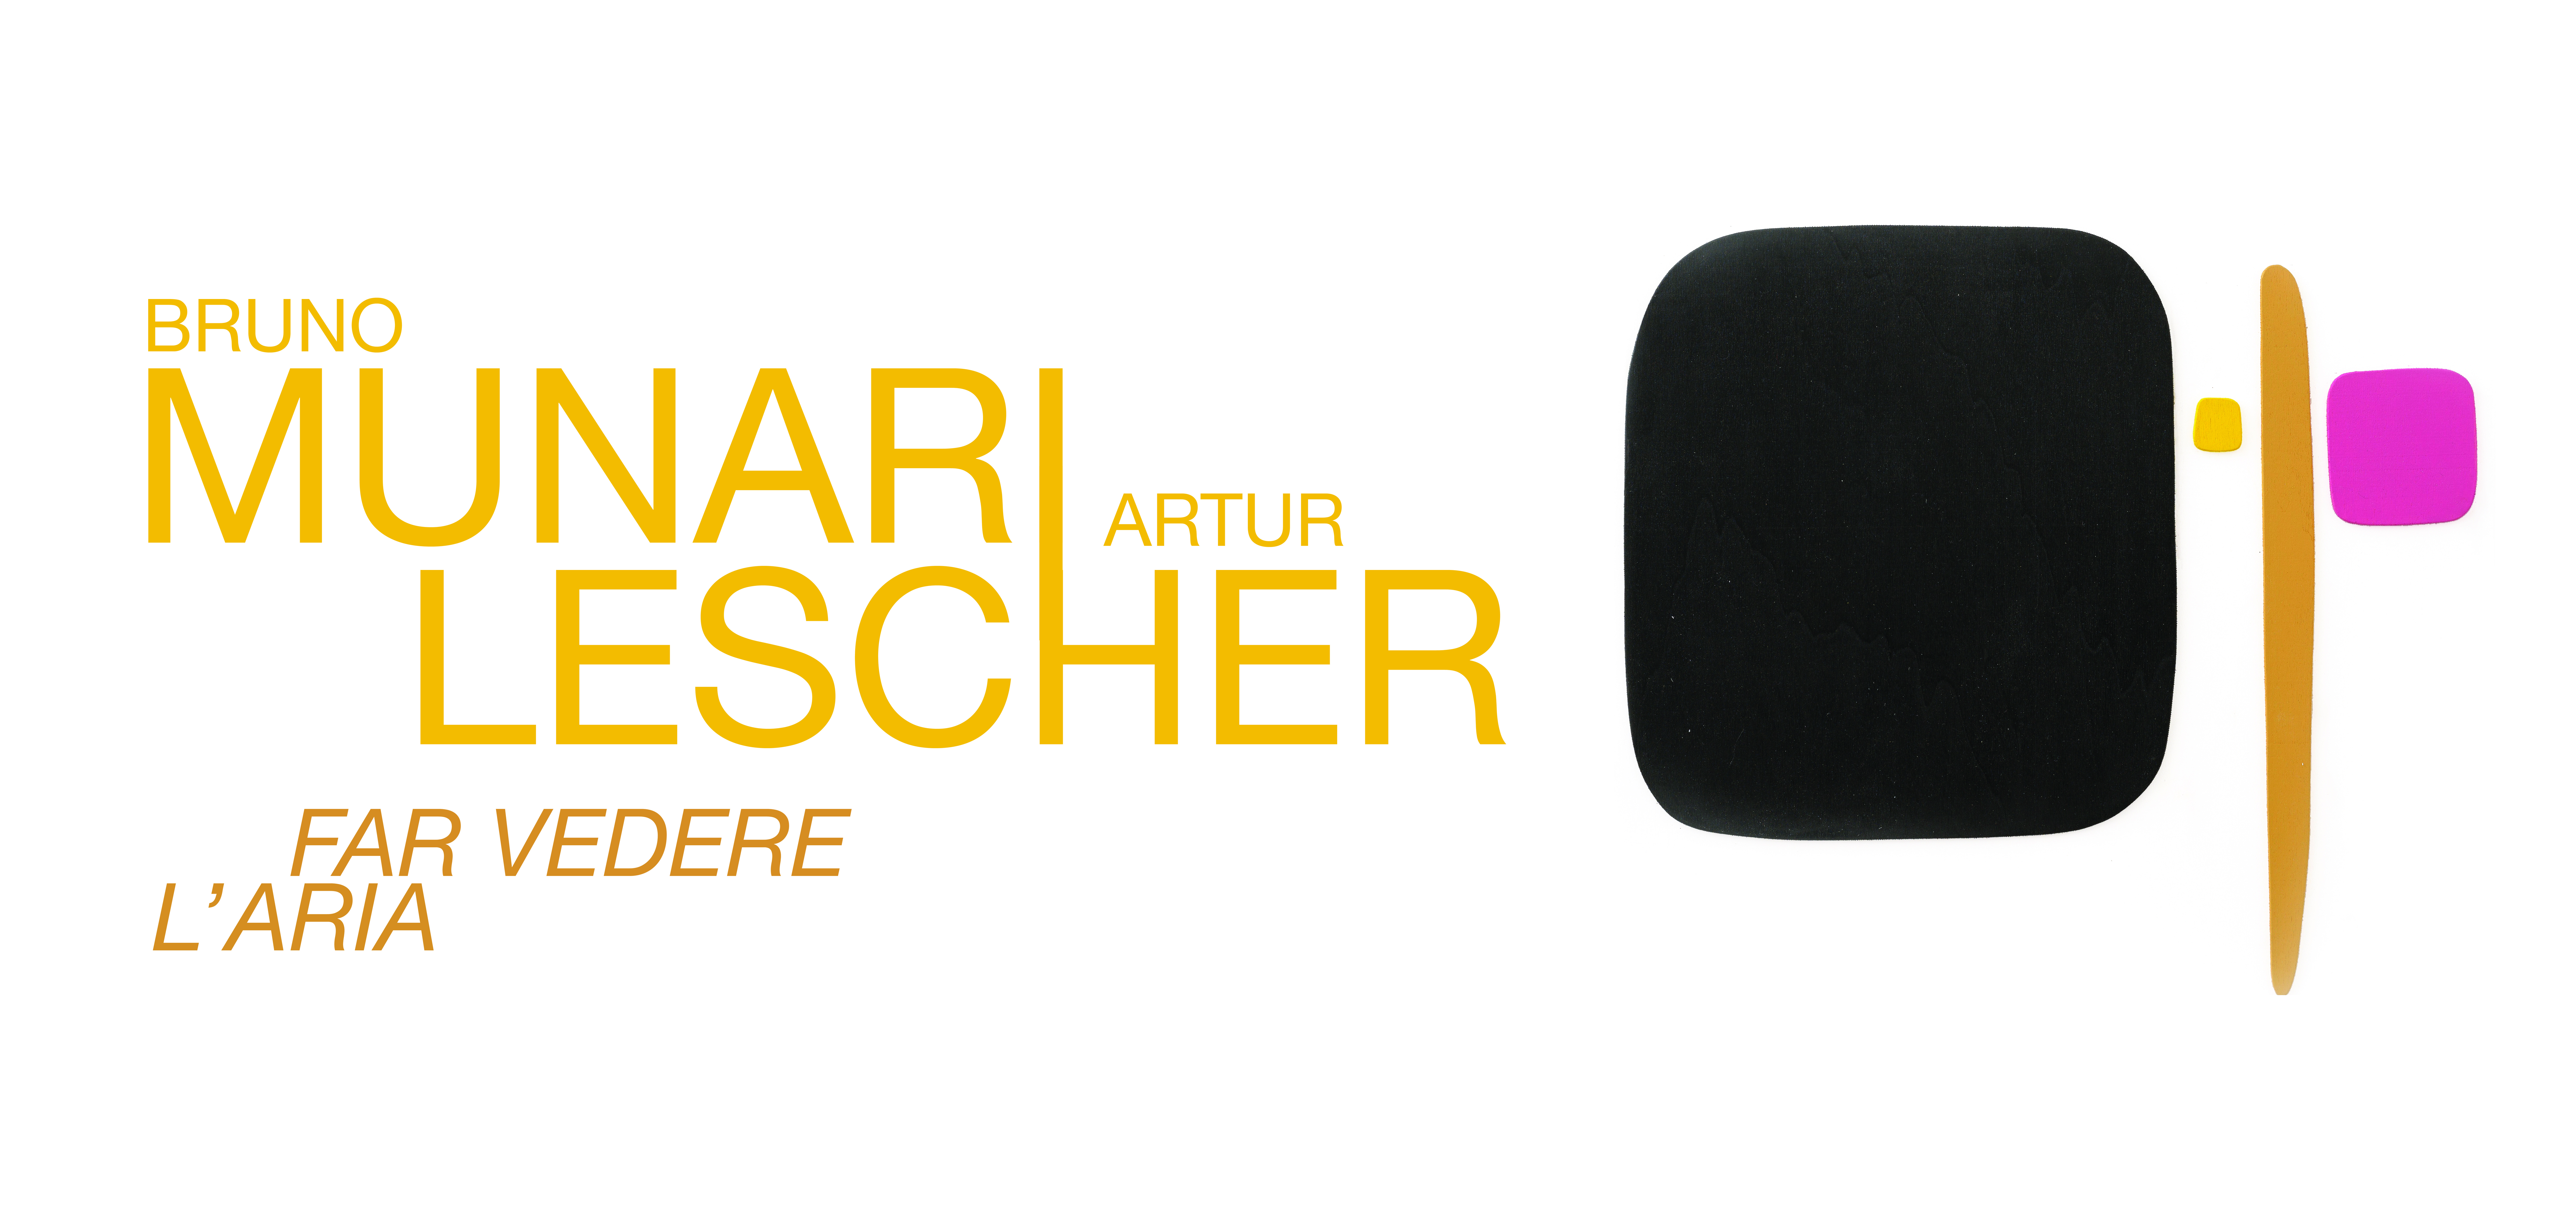 img-Far vedere l’aria: Bruno Munari - Artur Lescher